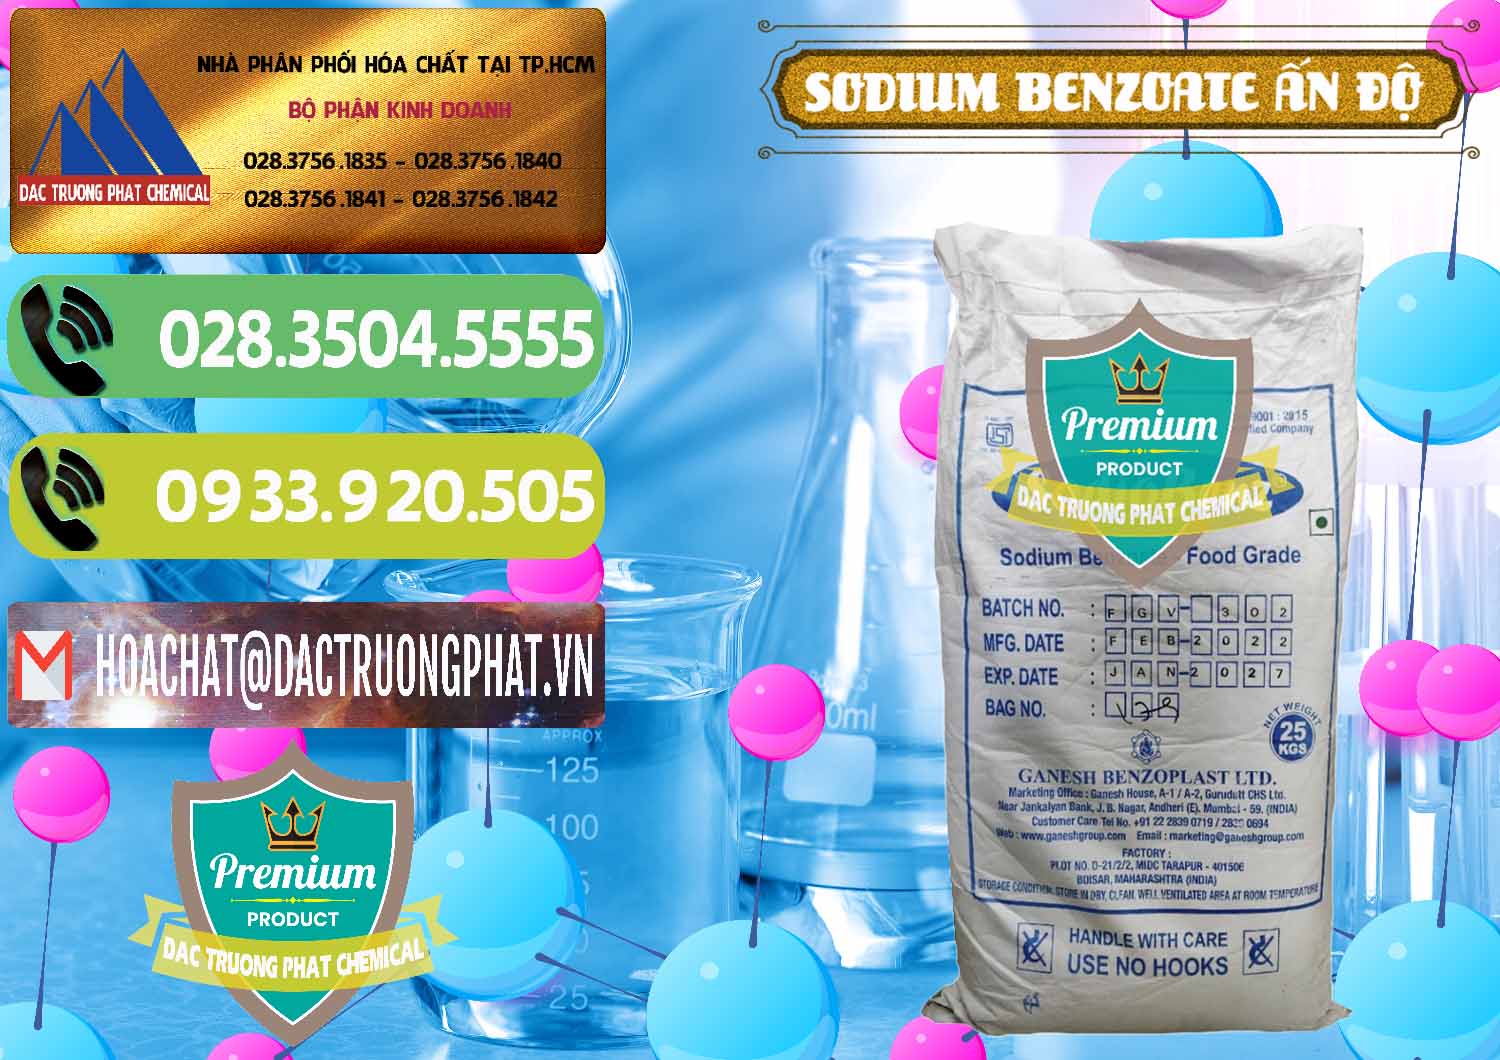 Cty phân phối & bán Sodium Benzoate - Mốc Bột Ấn Độ India - 0361 - Nơi cung ứng & phân phối hóa chất tại TP.HCM - hoachatmientay.vn